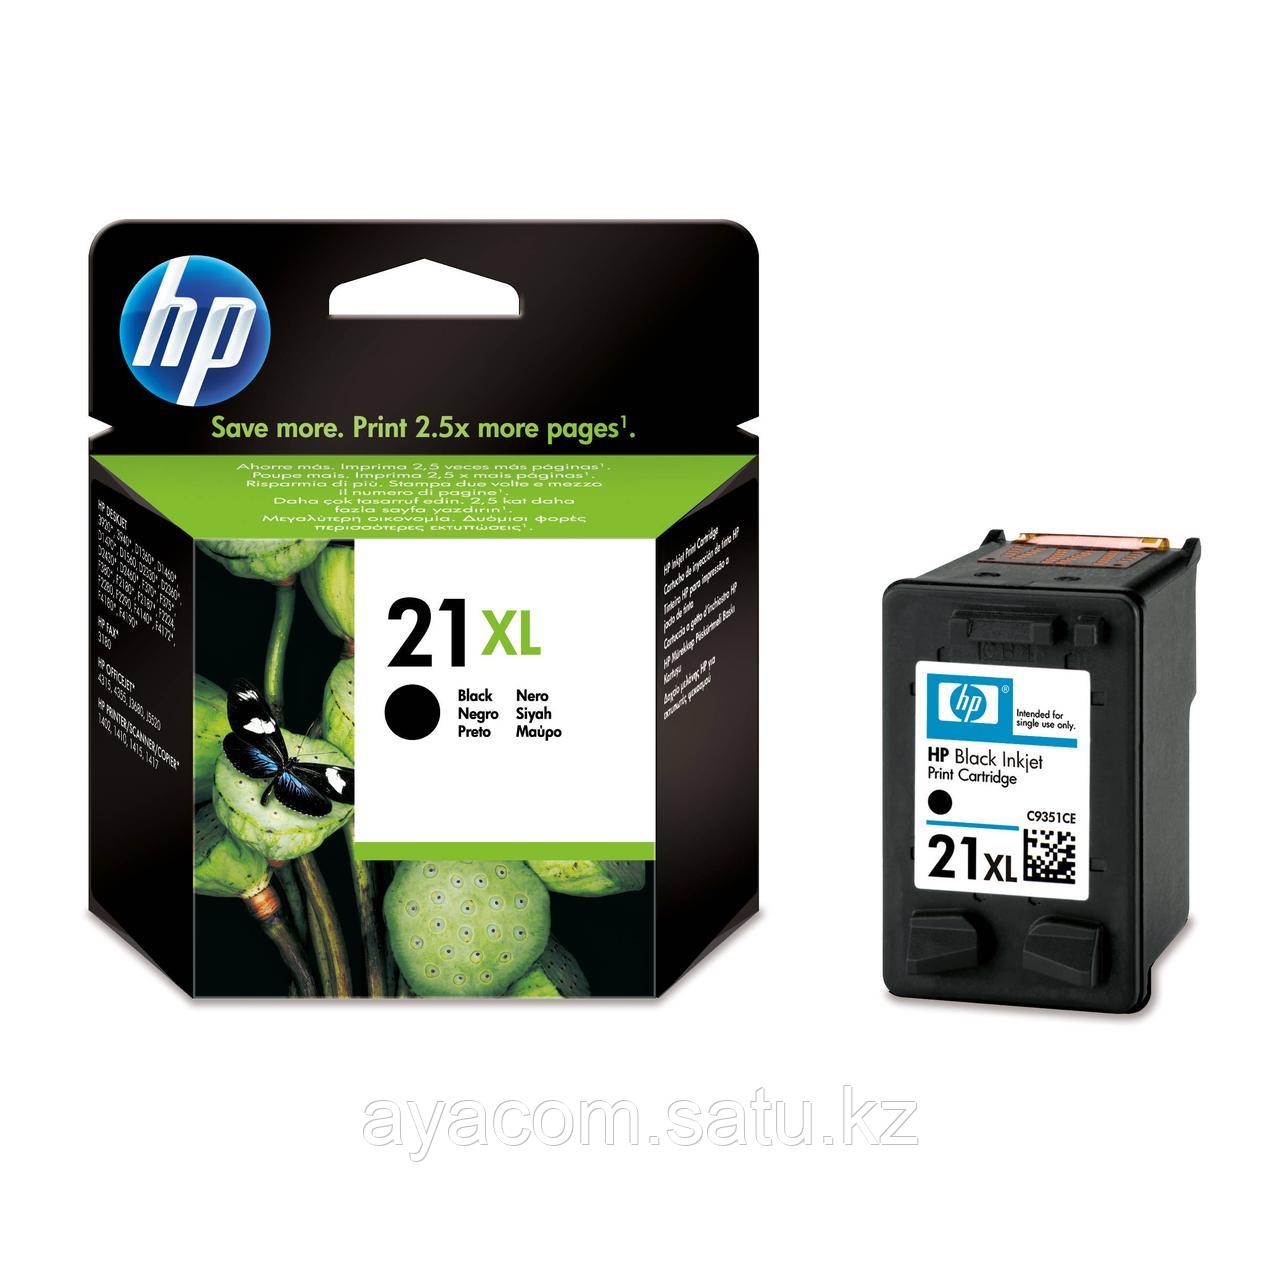 Картридж HP C9351CE Black Inkjet Print Cartridge №21XL